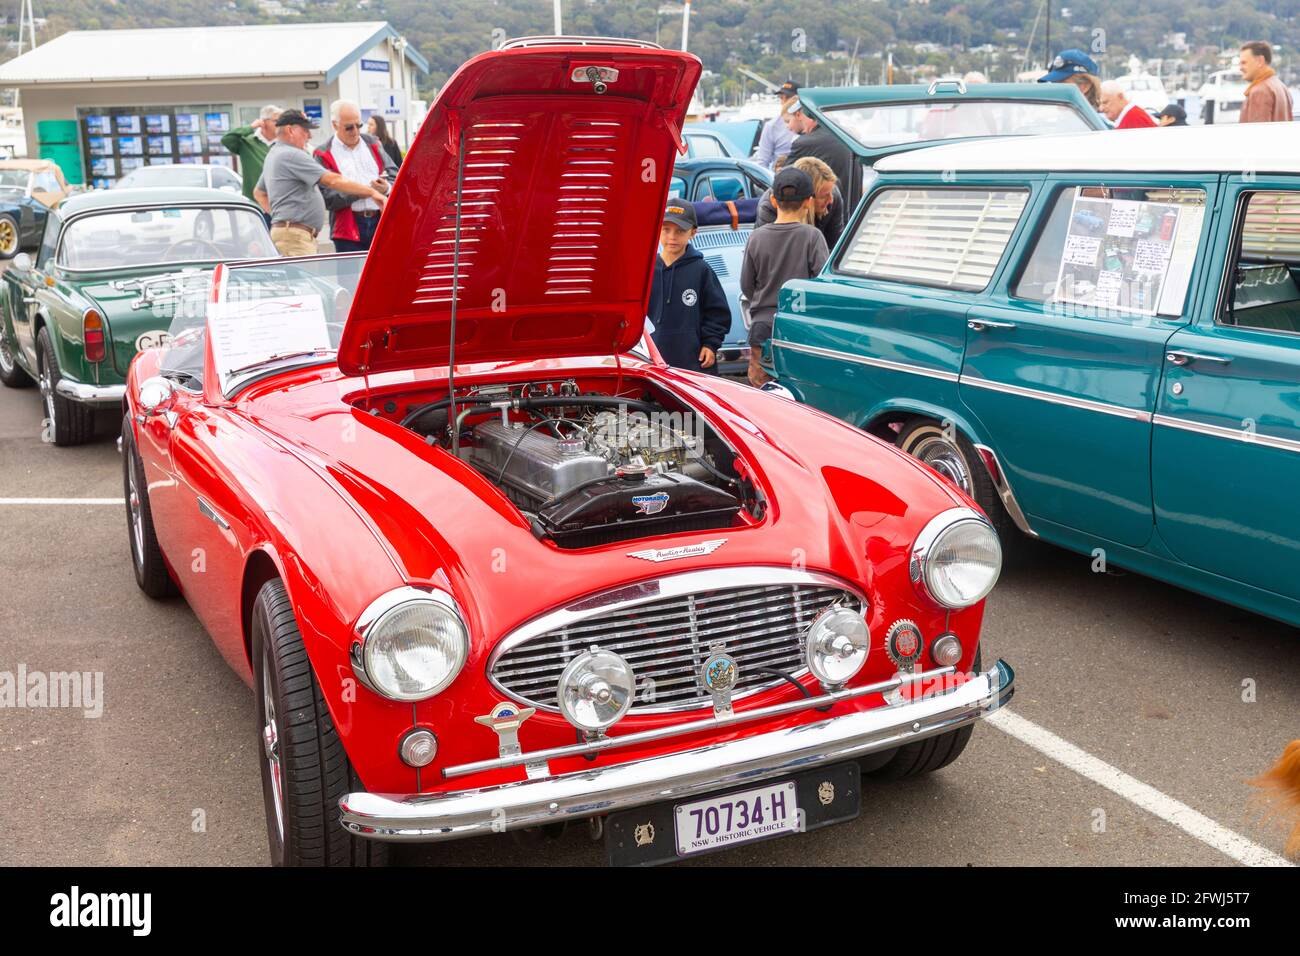 Classica auto sportiva britannica Austin Healey dal 1958 in rosso in occasione di una classica mostra di auto a Sydney, Australia Foto Stock